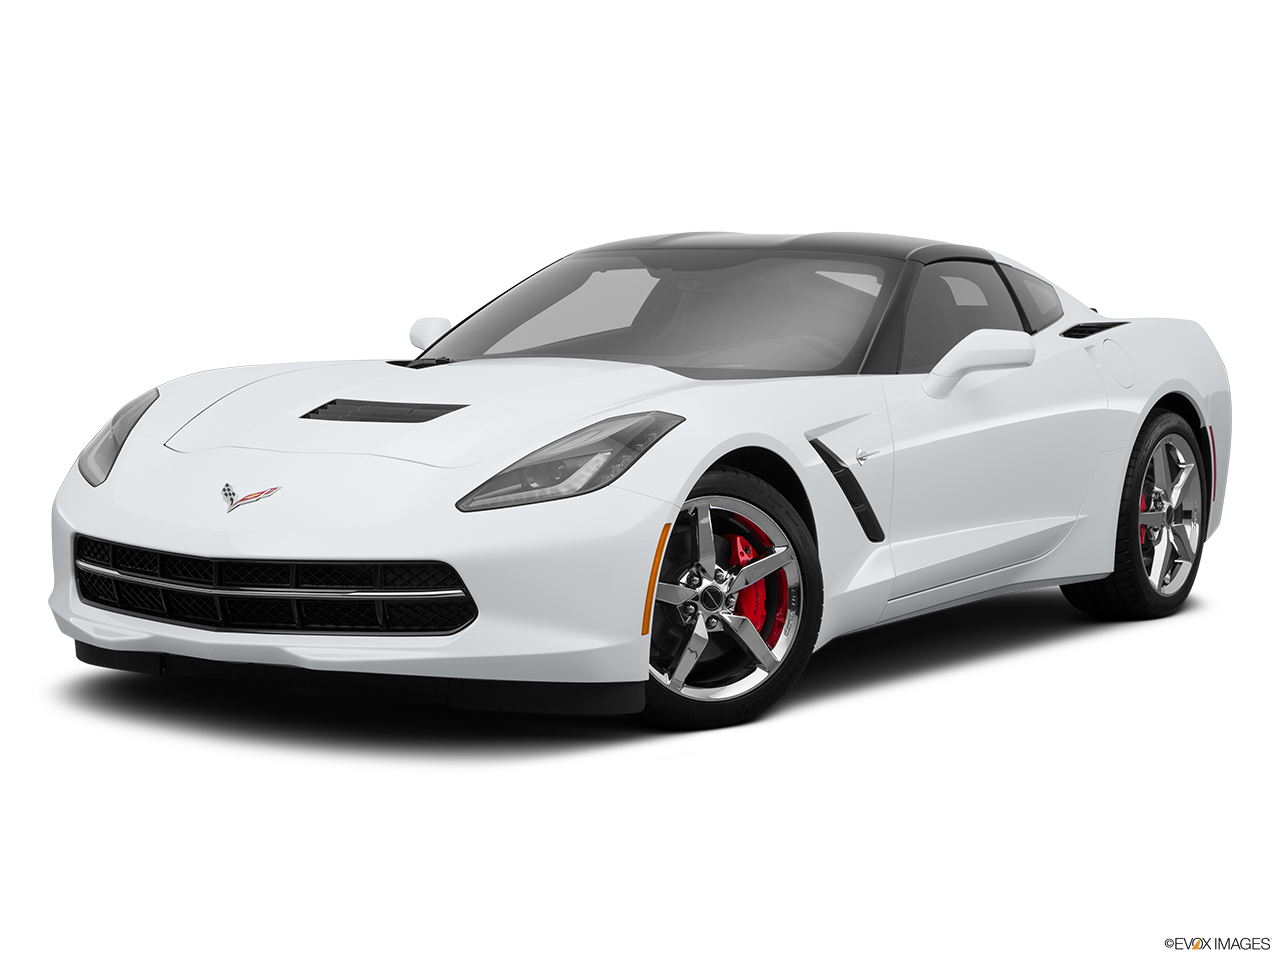 Với mẫu xe thể thao Corvette, bạn sẽ được khám phá những trải nghiệm độc đáo và cảm giác lái đầy lôi cuốn. Tham gia cùng chúng tôi để được thưởng thức hình ảnh nổi bật về chiếc xe huyền thoại này.